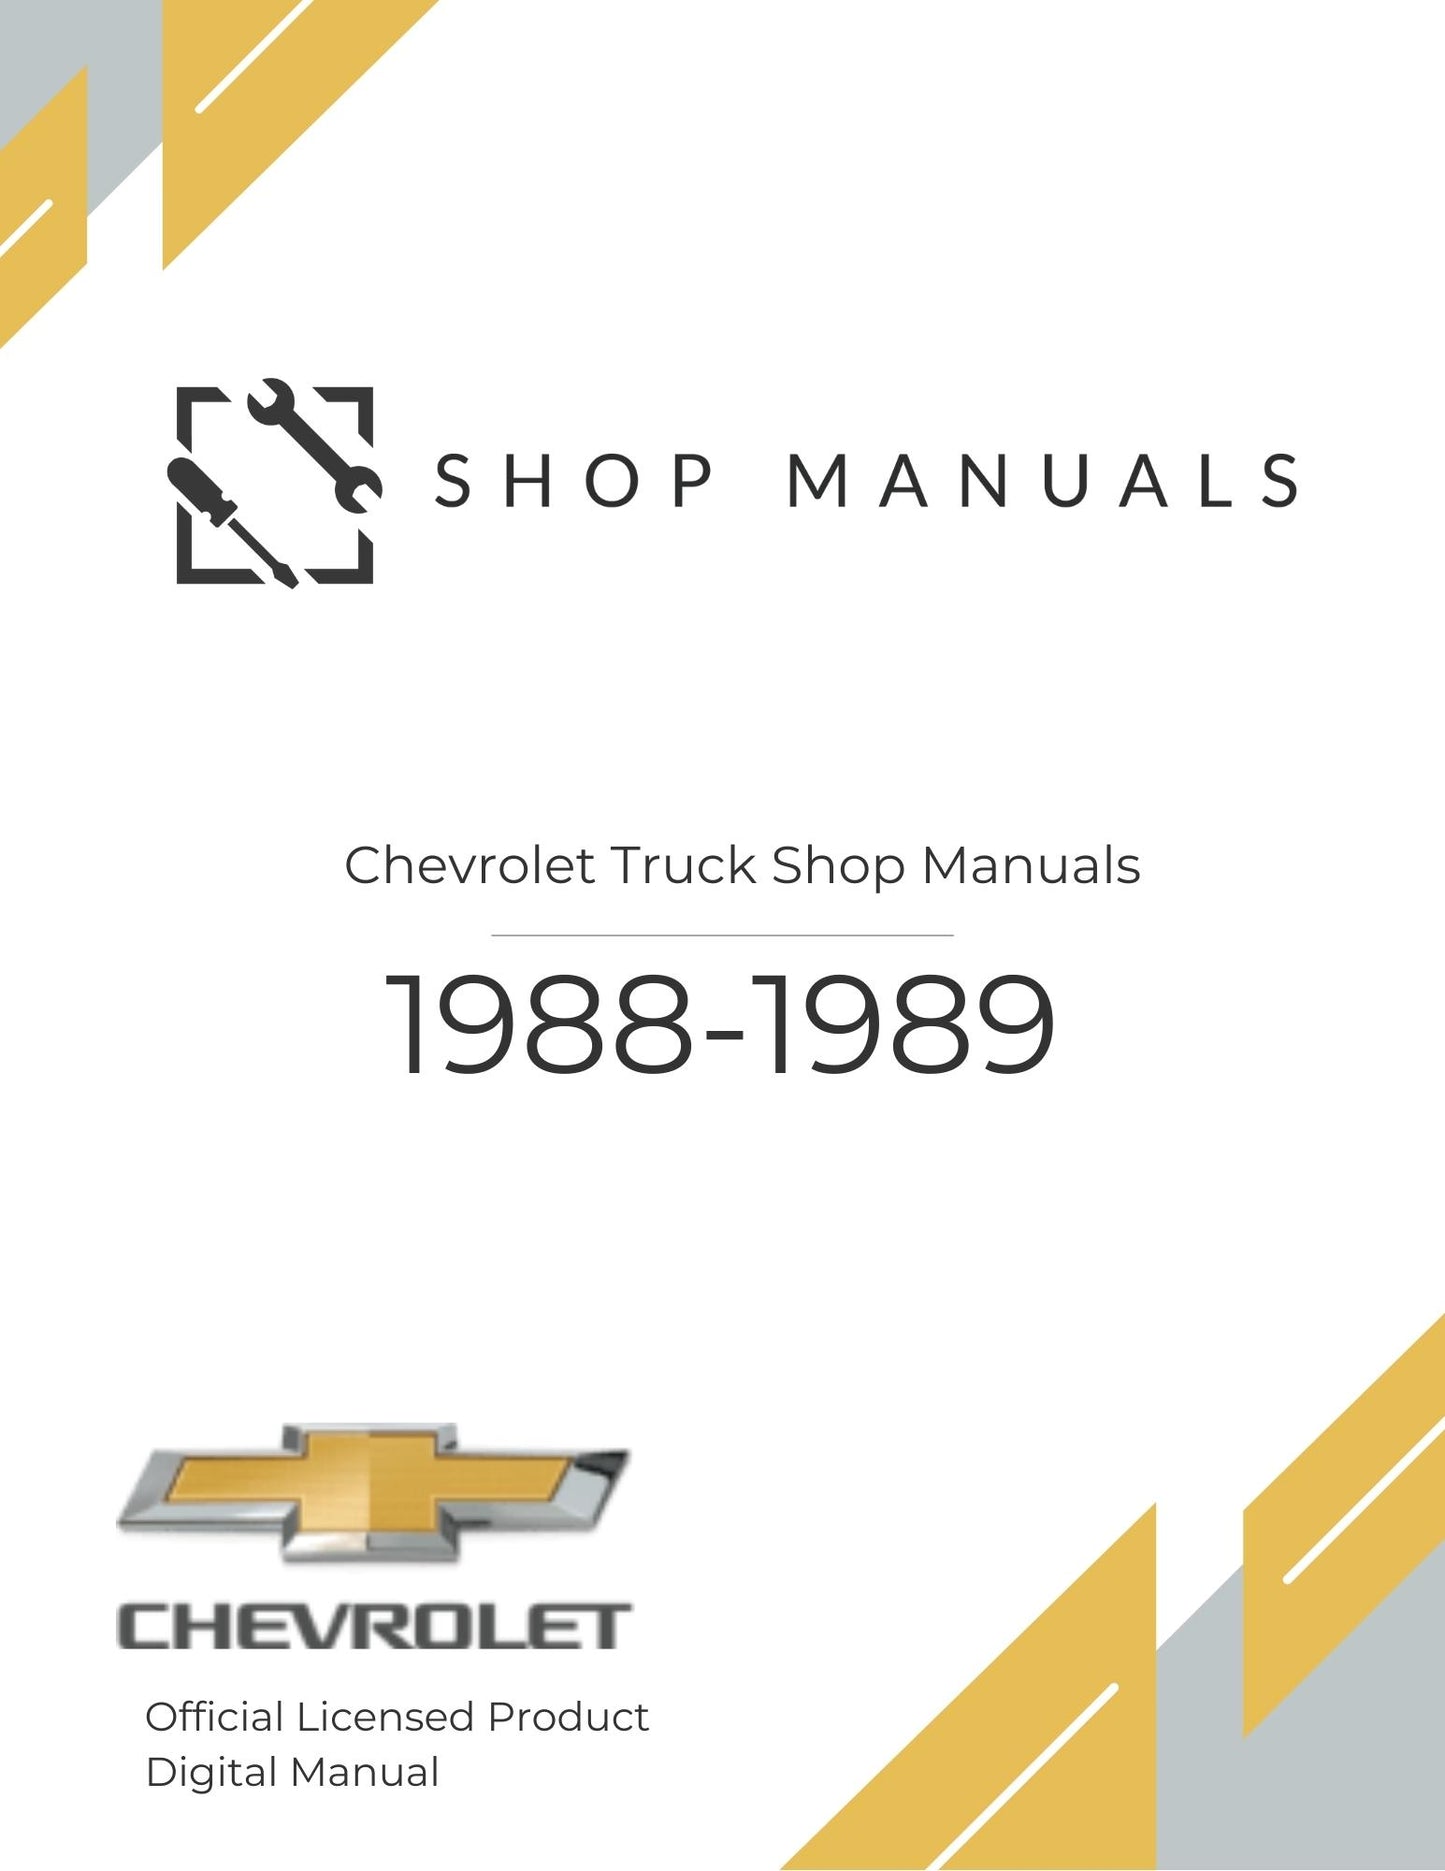 1988-1989 Chevrolet Truck Shop Manuals